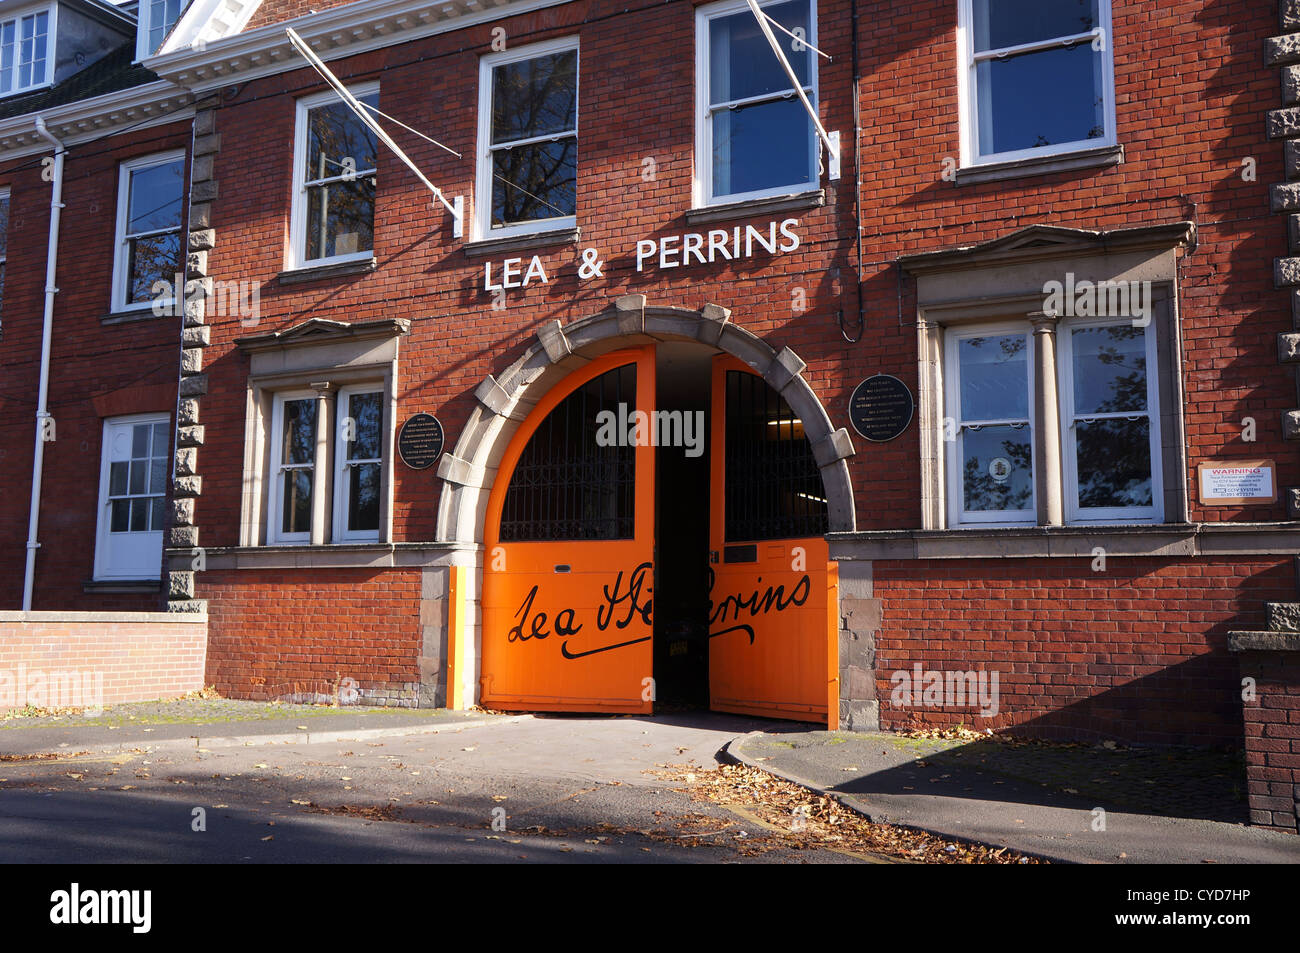 Lea et Perrins, l'usine de lea et Perrins, Worcester, Royaume-Uni - Usine où Worcester source. Banque D'Images